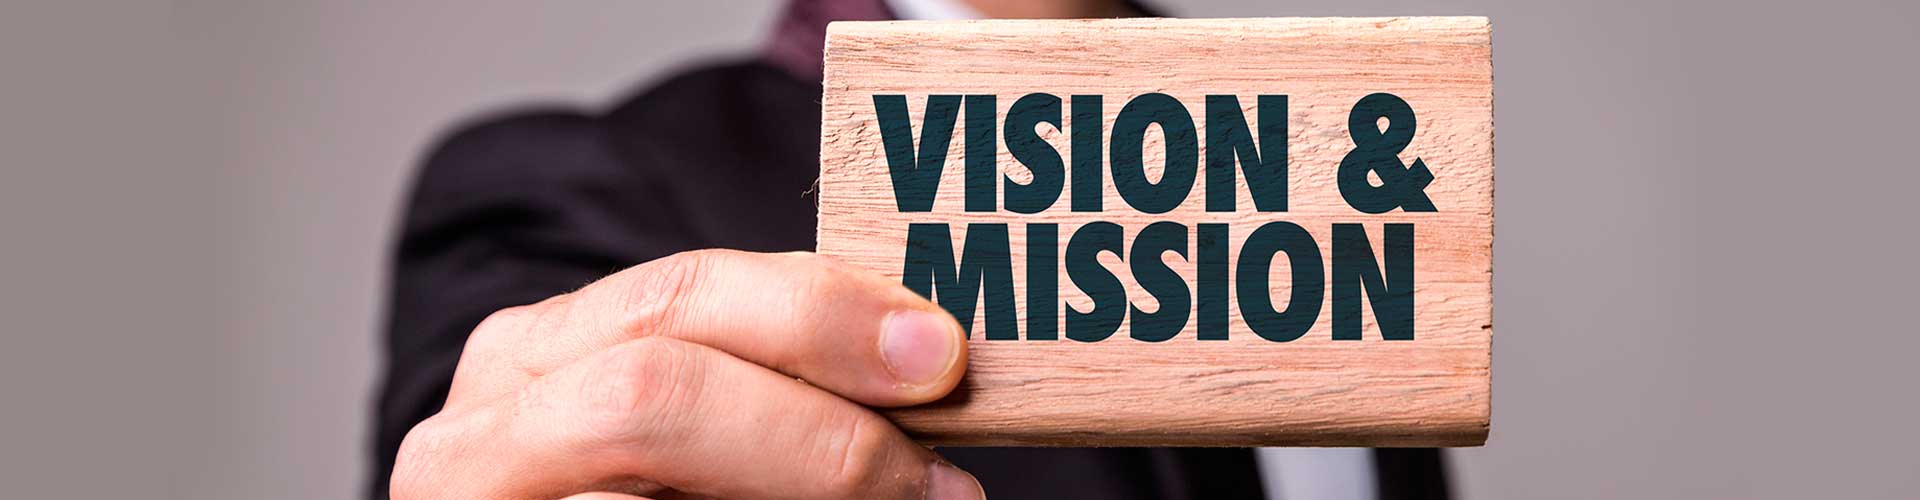 vision-mission-bg